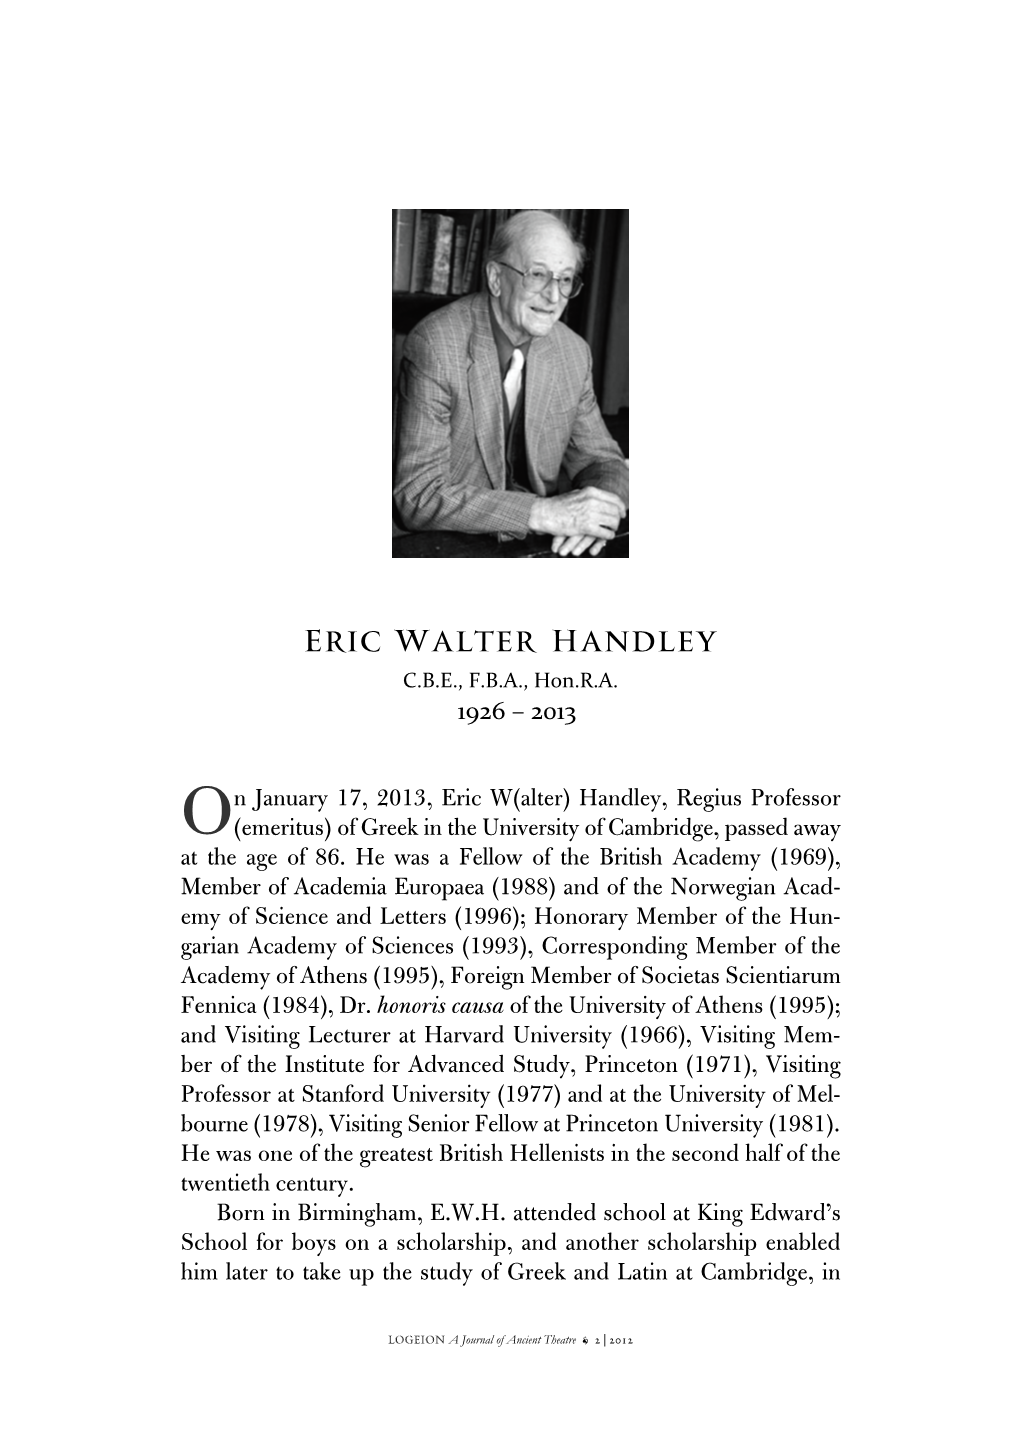 ERIC WALTER HANDLEY C.B.E., F.B.A., Hon.R.A